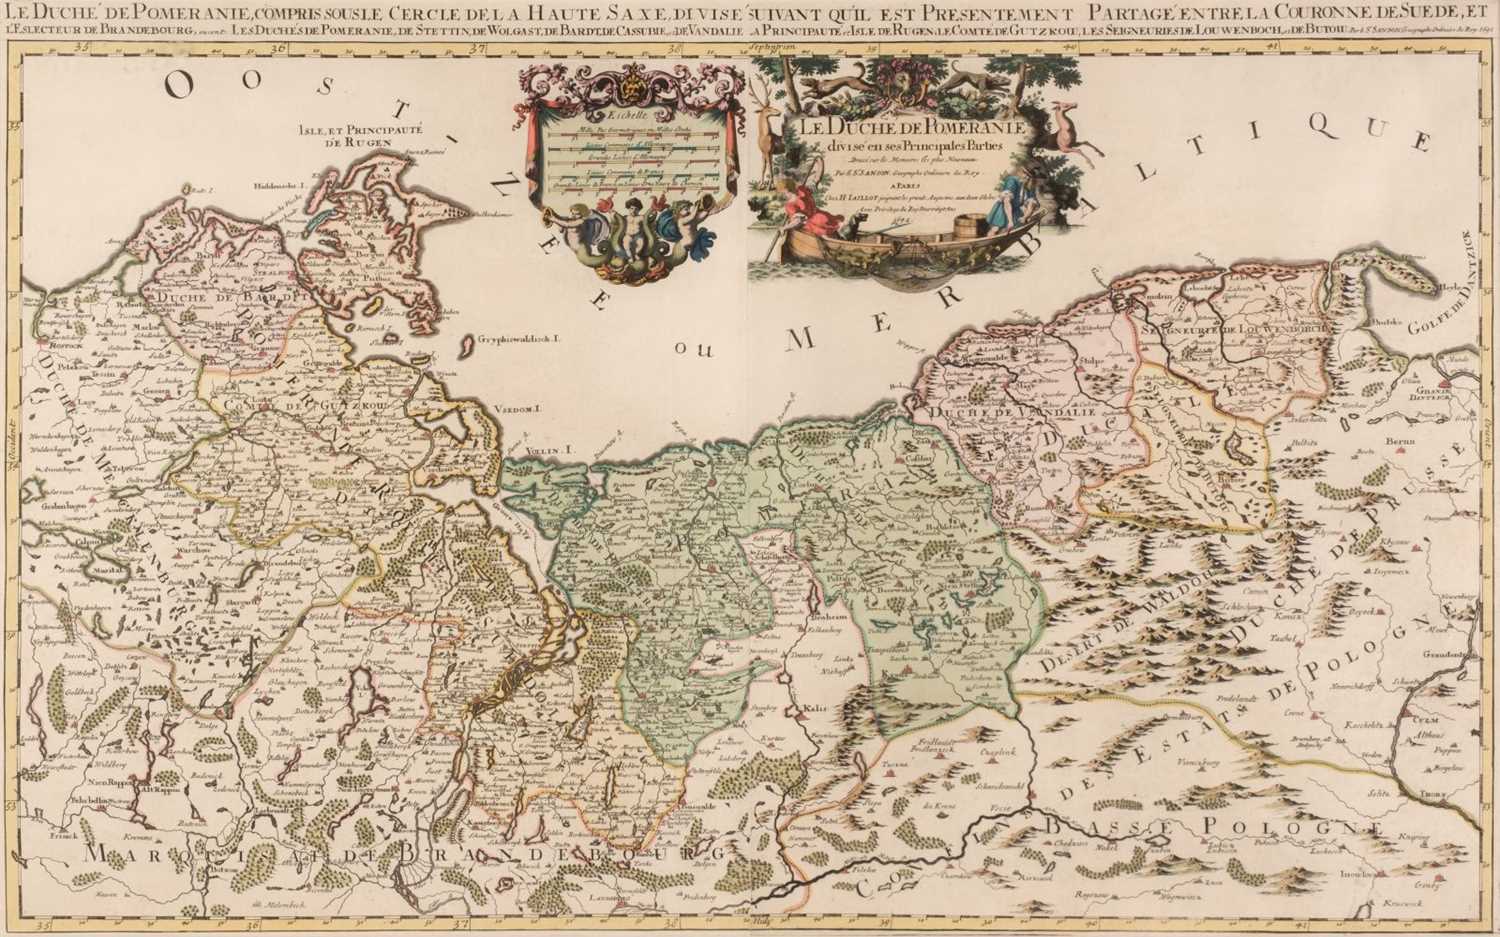 Lot 39 - Poland. Jaillot (Alexis-Hubert), Le Duche de Pomeranie, 1692